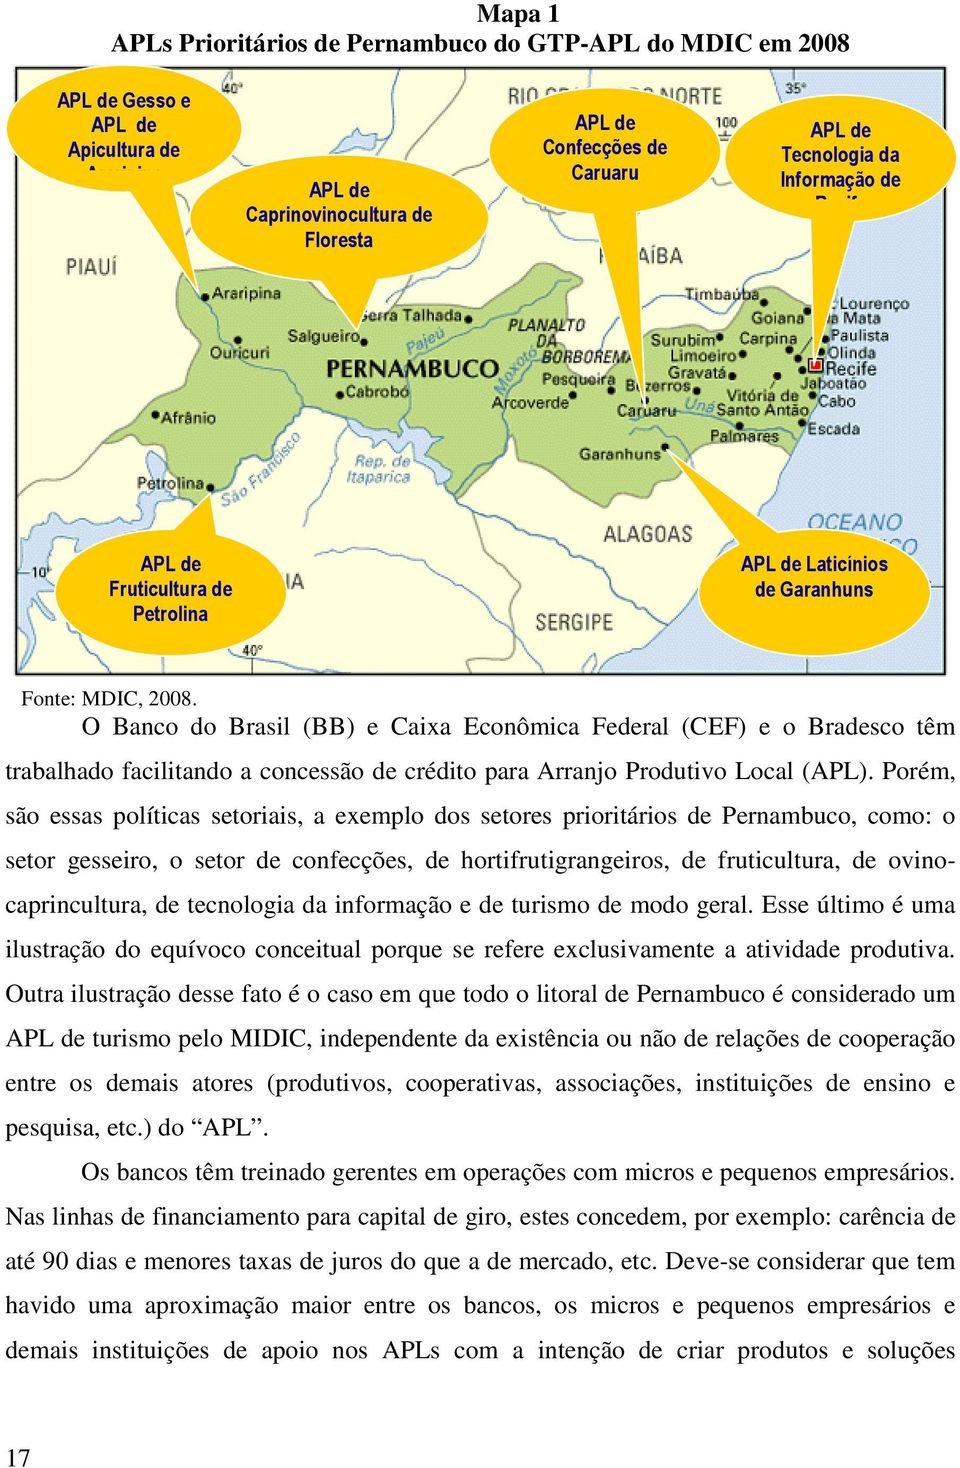 O Banco do Brasil (BB) e Caixa Econômica Federal (CEF) e o Bradesco têm trabalhado facilitando a concessão de crédito para Arranjo Produtivo Local (APL).